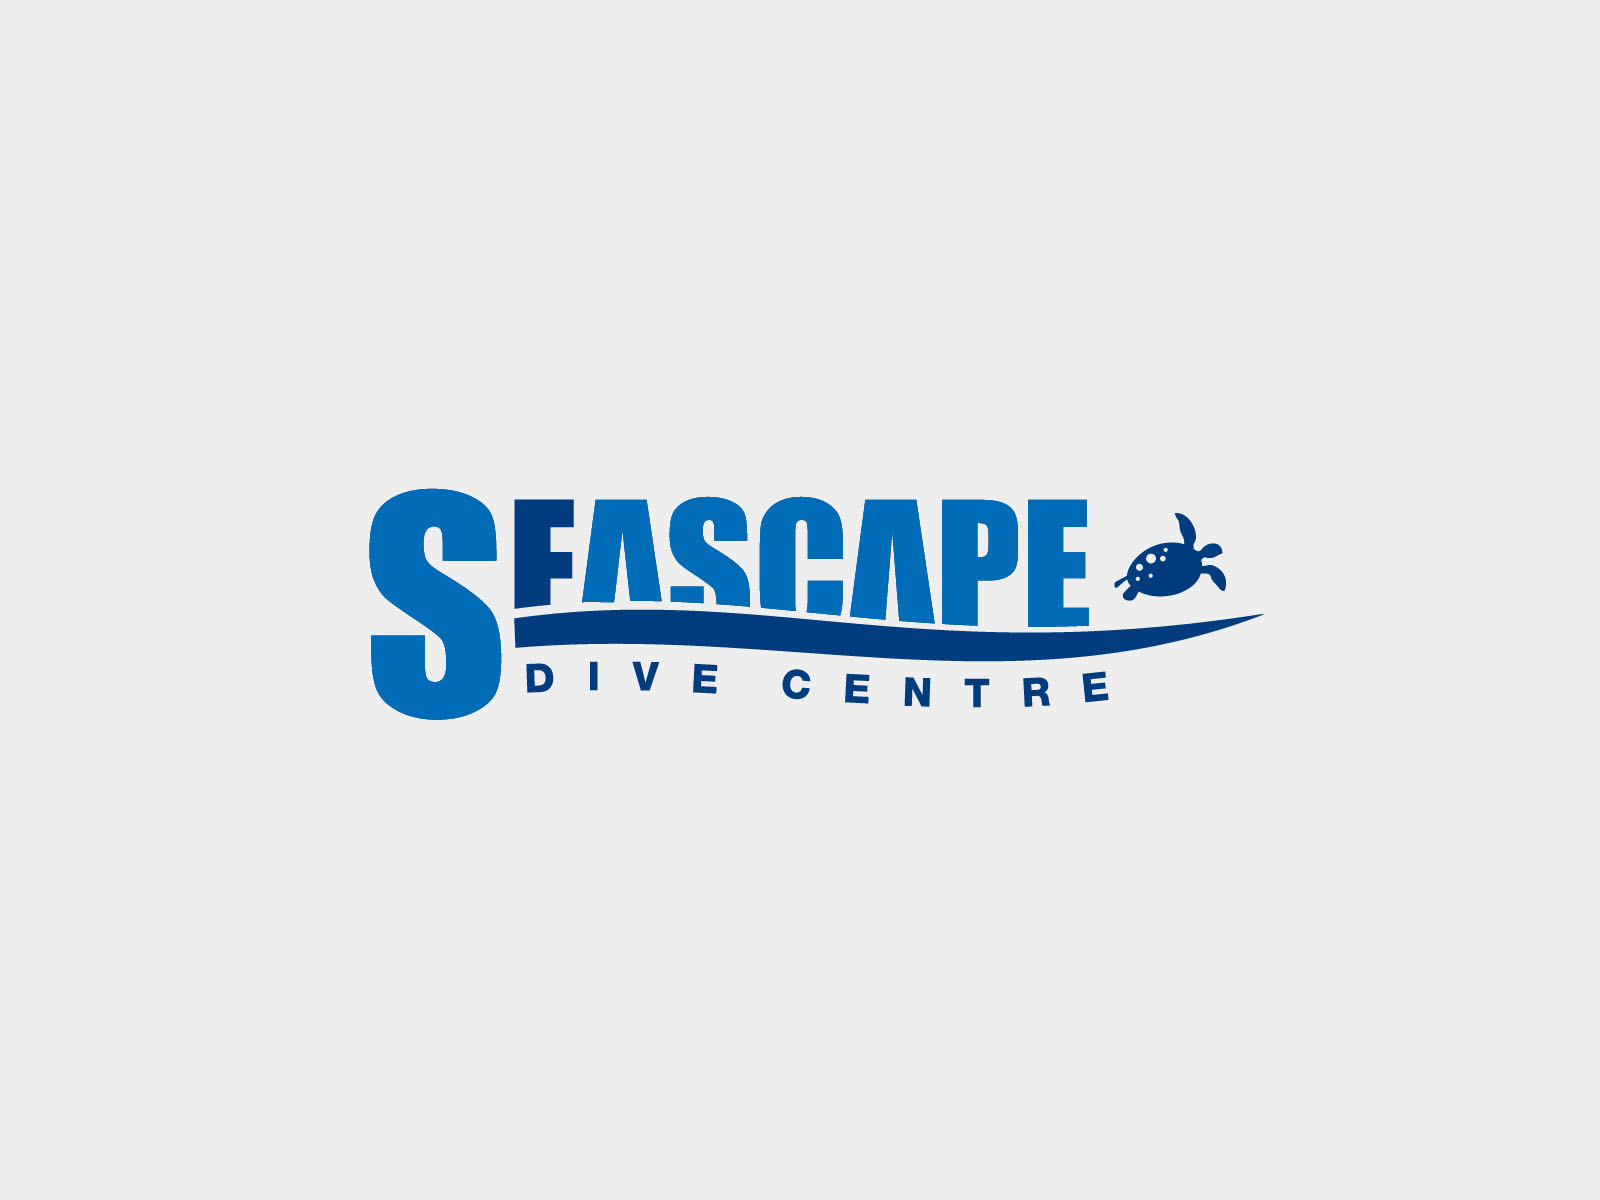 Seascape Dive Centre